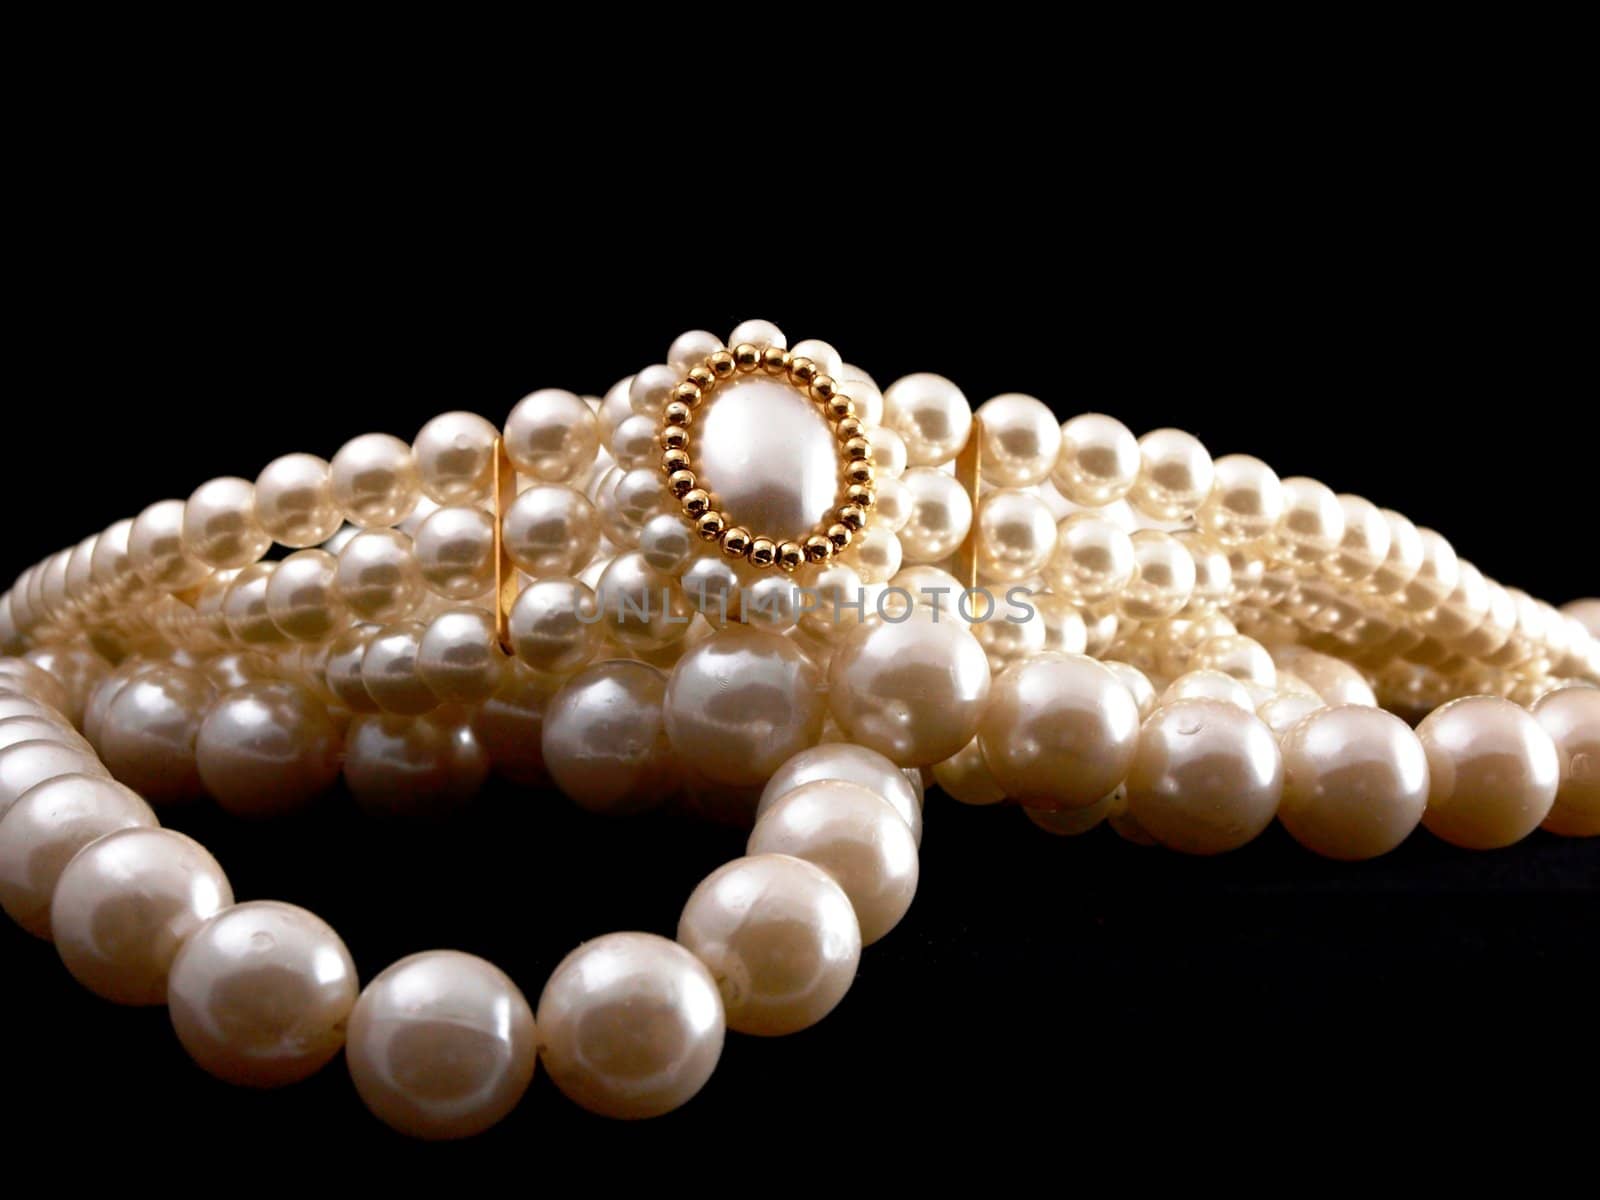 Pearls by Arvebettum